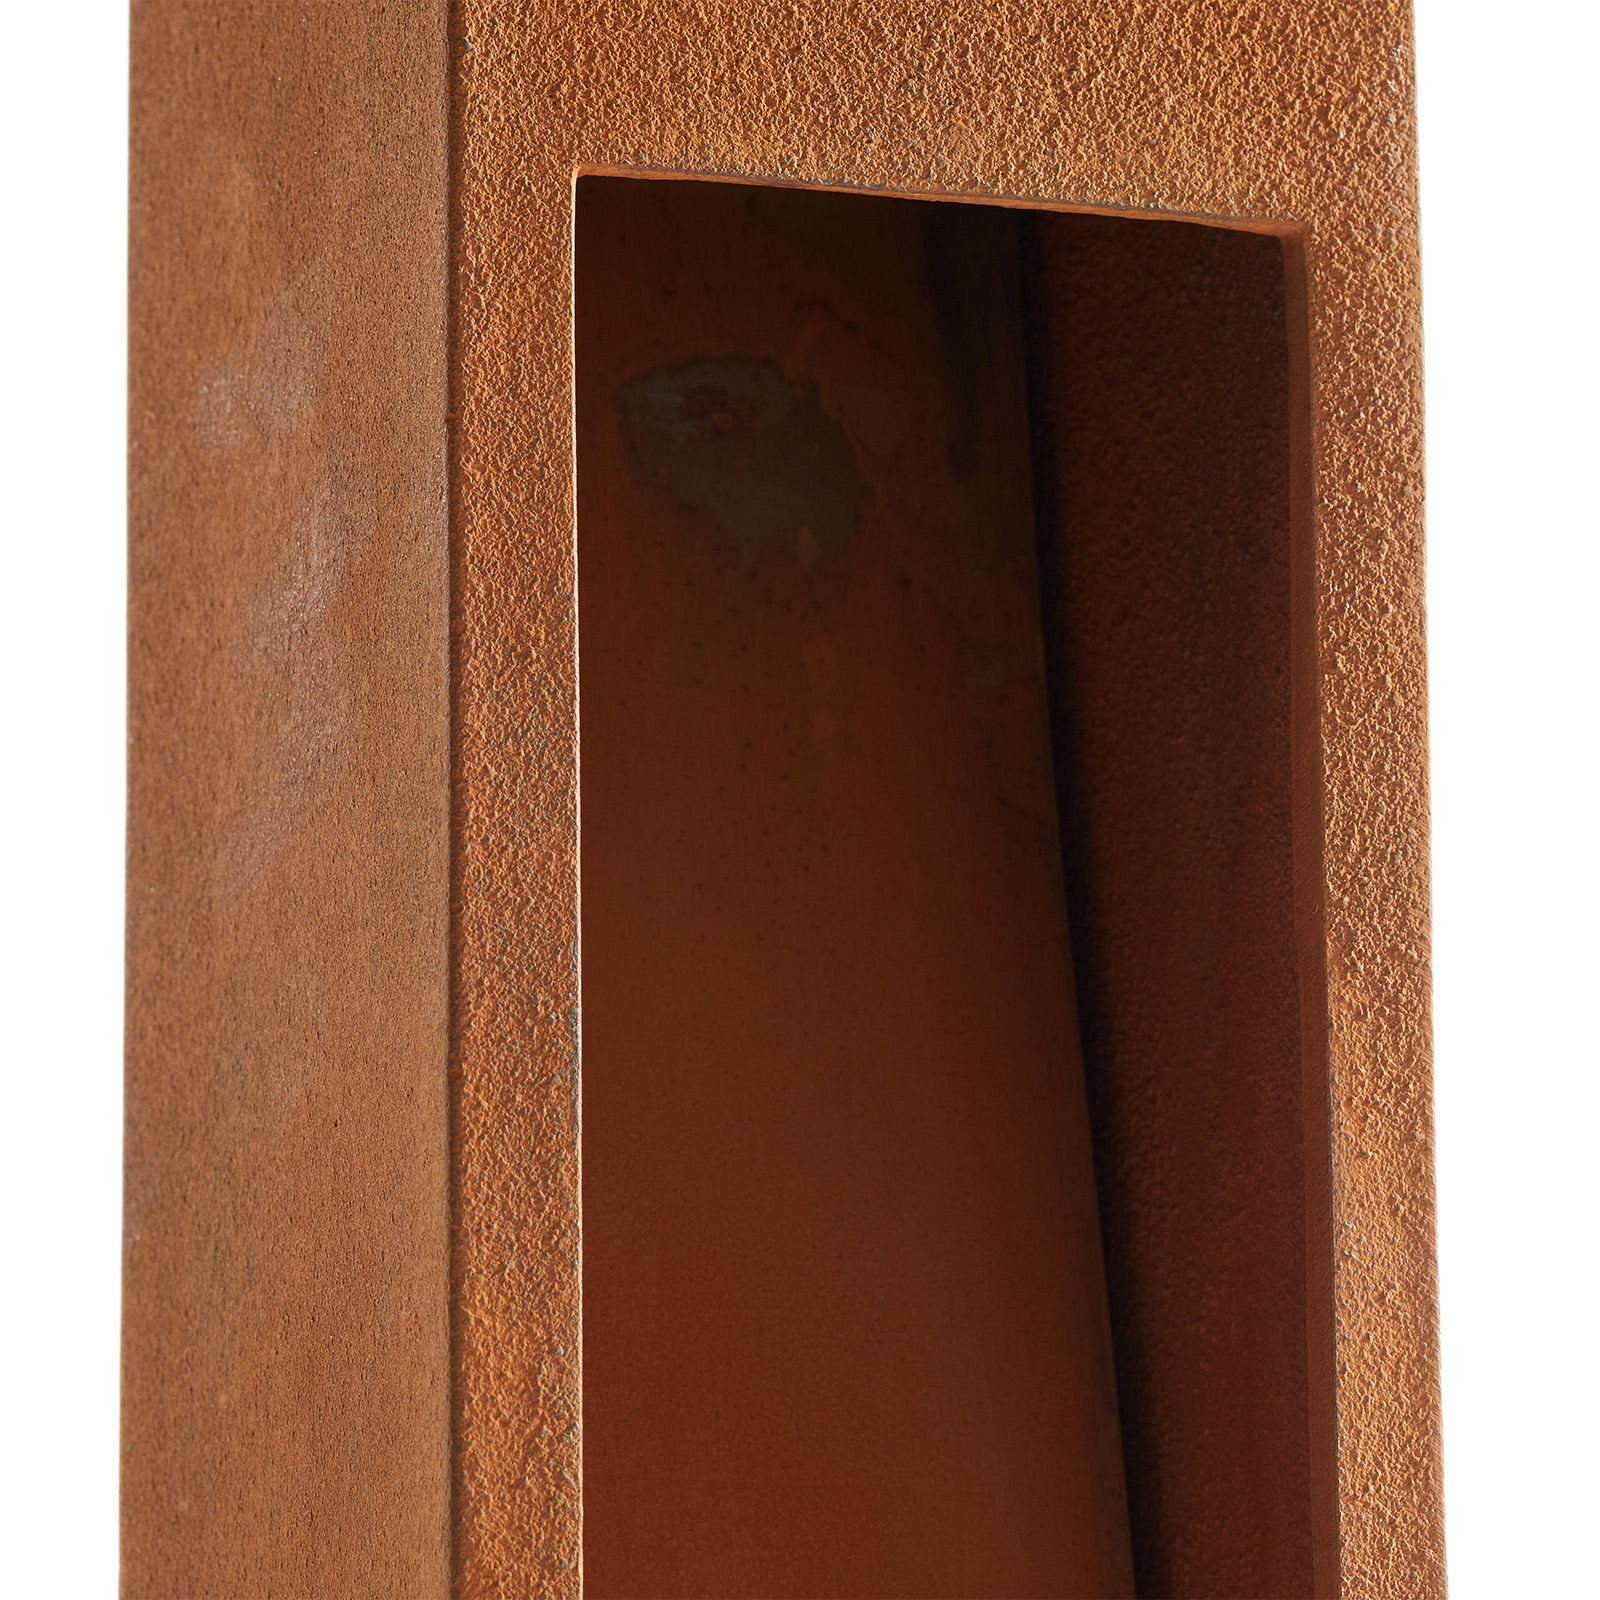 SLV Rusty Slot 80 rust brown pillar light